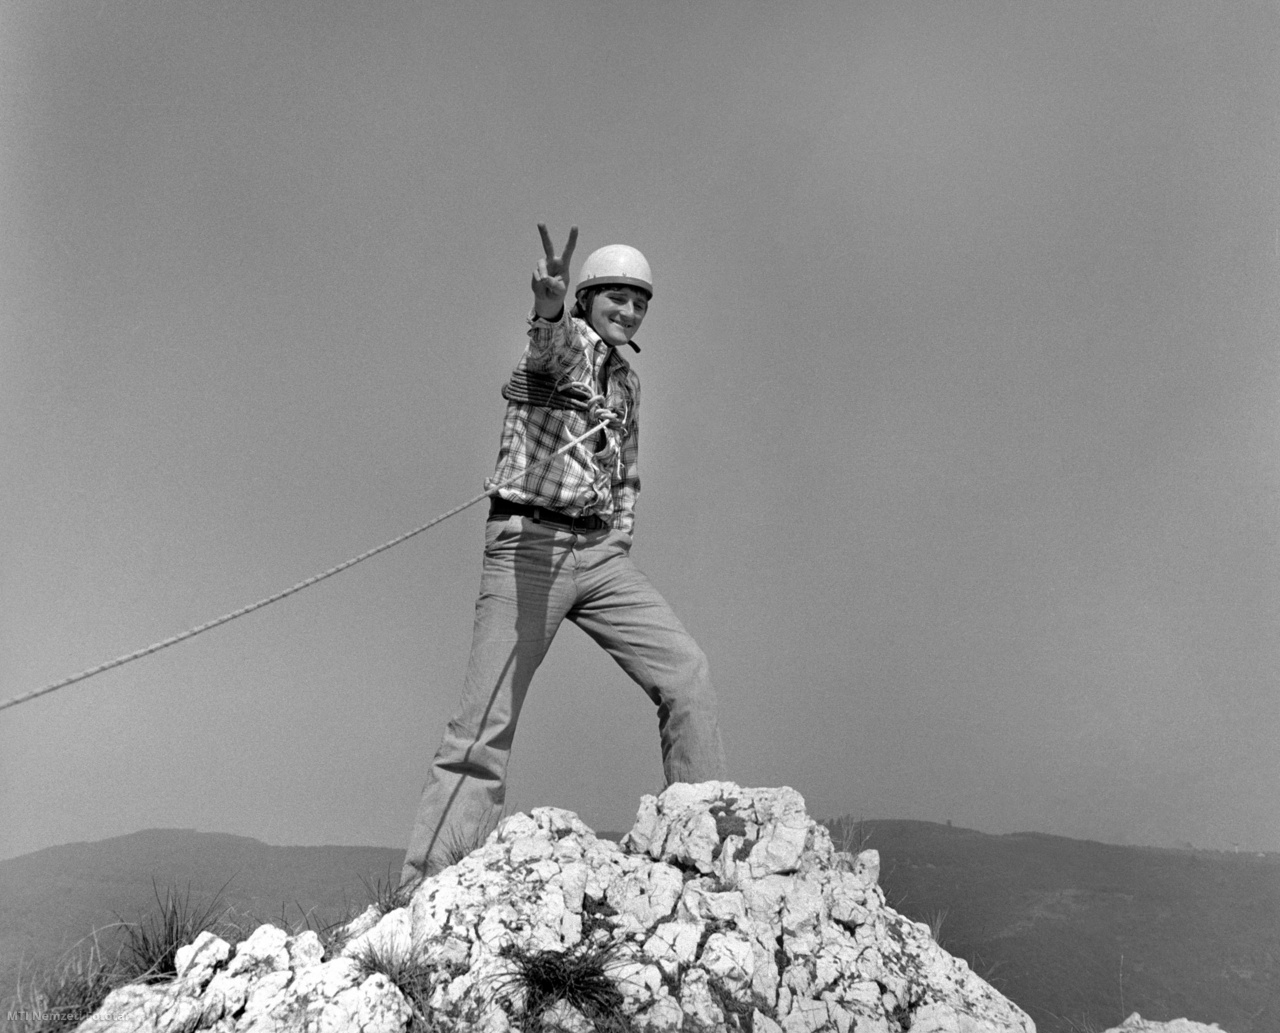 Pilisszentkereszt, 21 de septiembre de 1975. Lajos Soós, reportero gráfico de la Oficina de Telégrafos de Hungría (MTI) en el Mercy Memorial Tour organizado en Vaskapu en Pilis, en conmemoración de Emil Zsigmondi y otros escaladores húngaros fallecidos.  Más de 100 escaladores participaron en el recorrido, que fue organizado por el comité de escalada de la Sociedad Húngara para la Amistad de la Naturaleza.